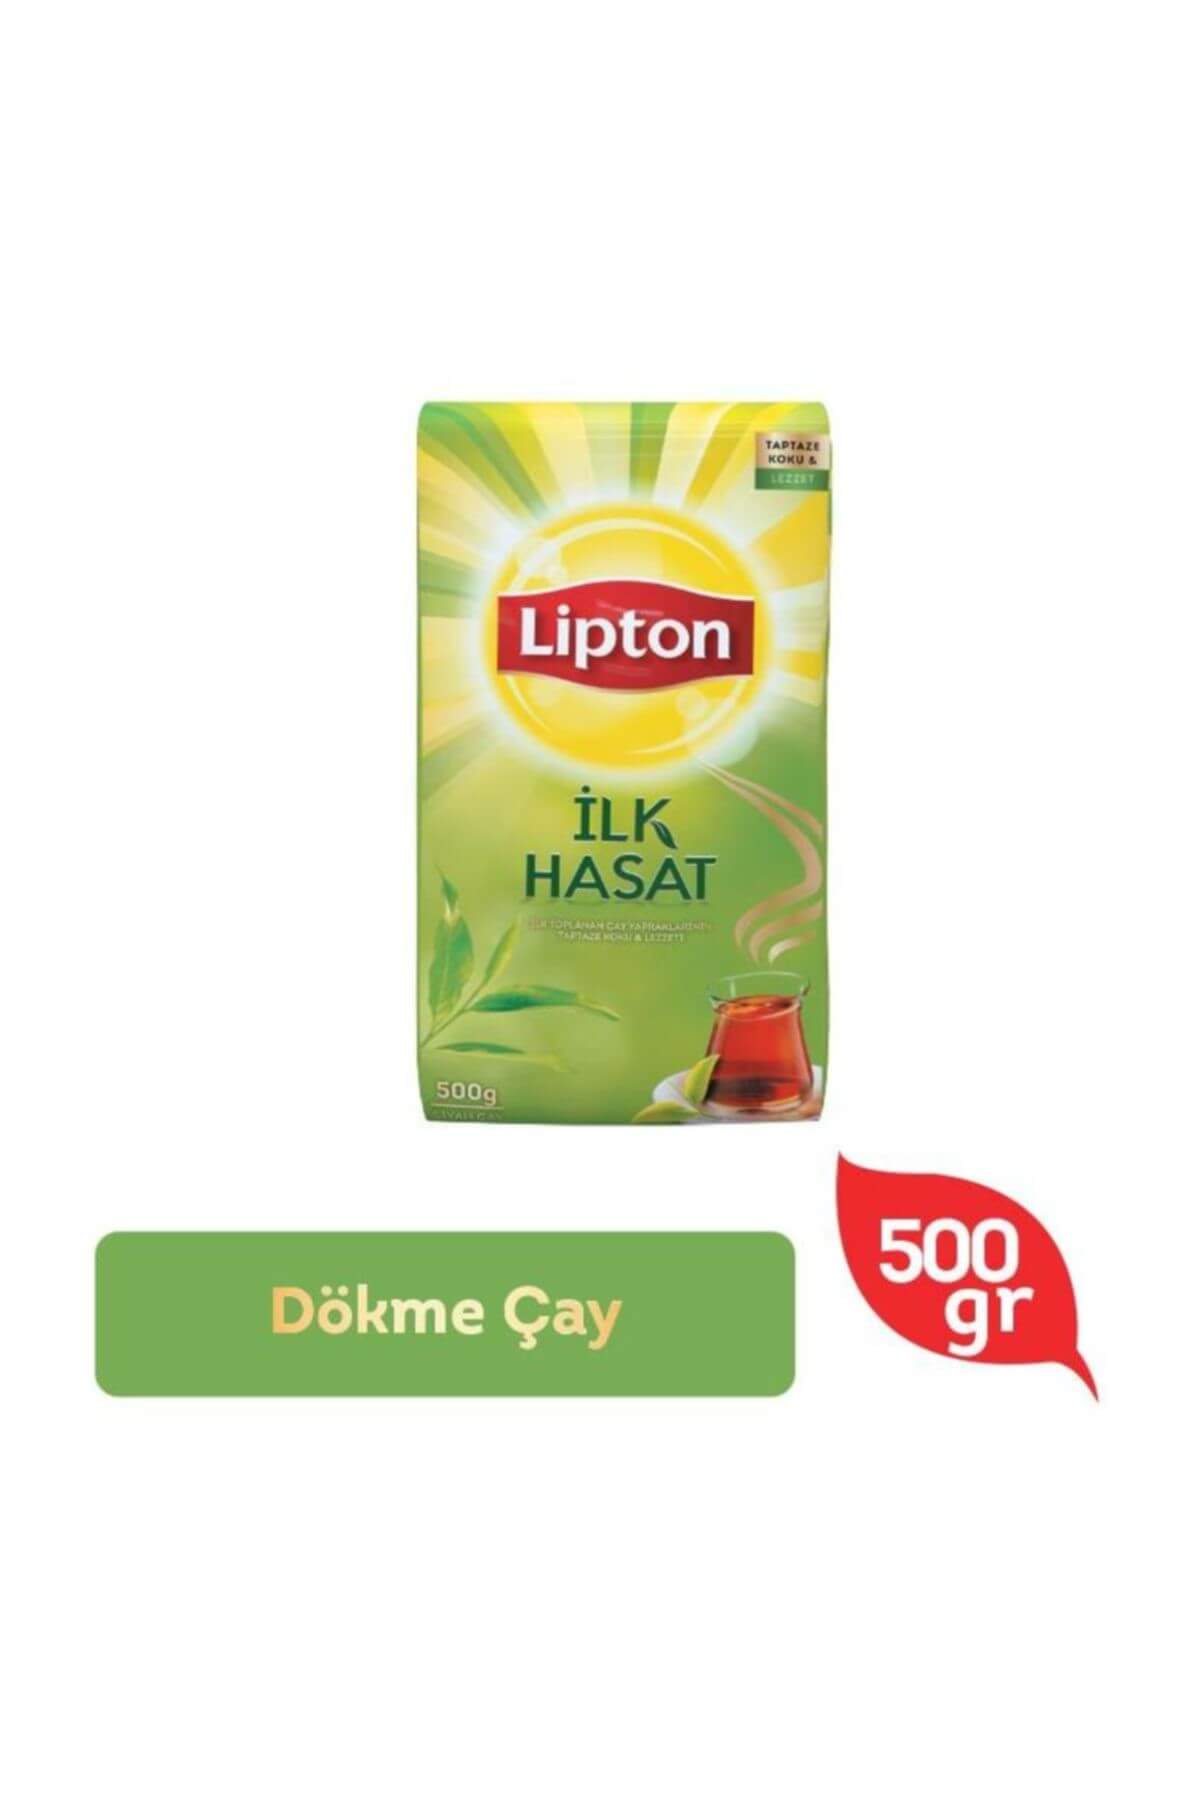 Lipton İlk Hasat Dökme Çay 500 g